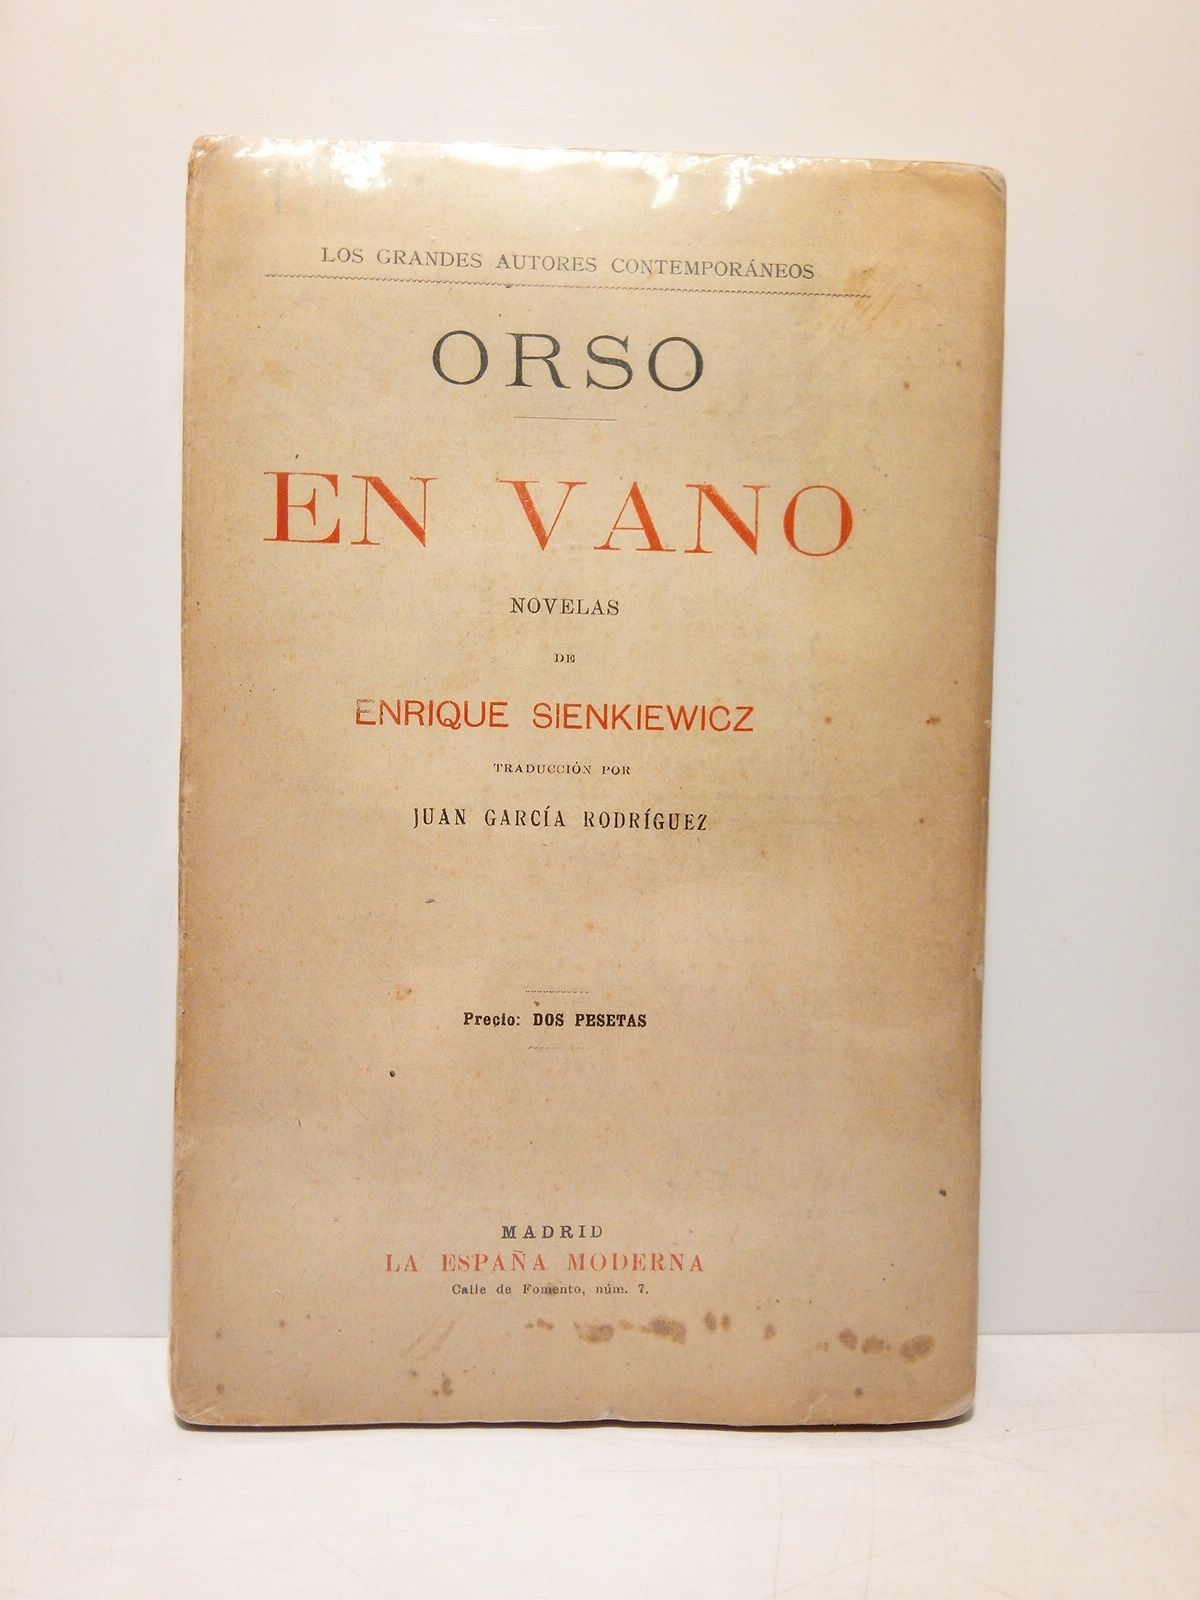 SIENKIEWICZ, Enrique - Orso; En vano. (Novelas) /  Traduccin por Juan Garca Rodrguez